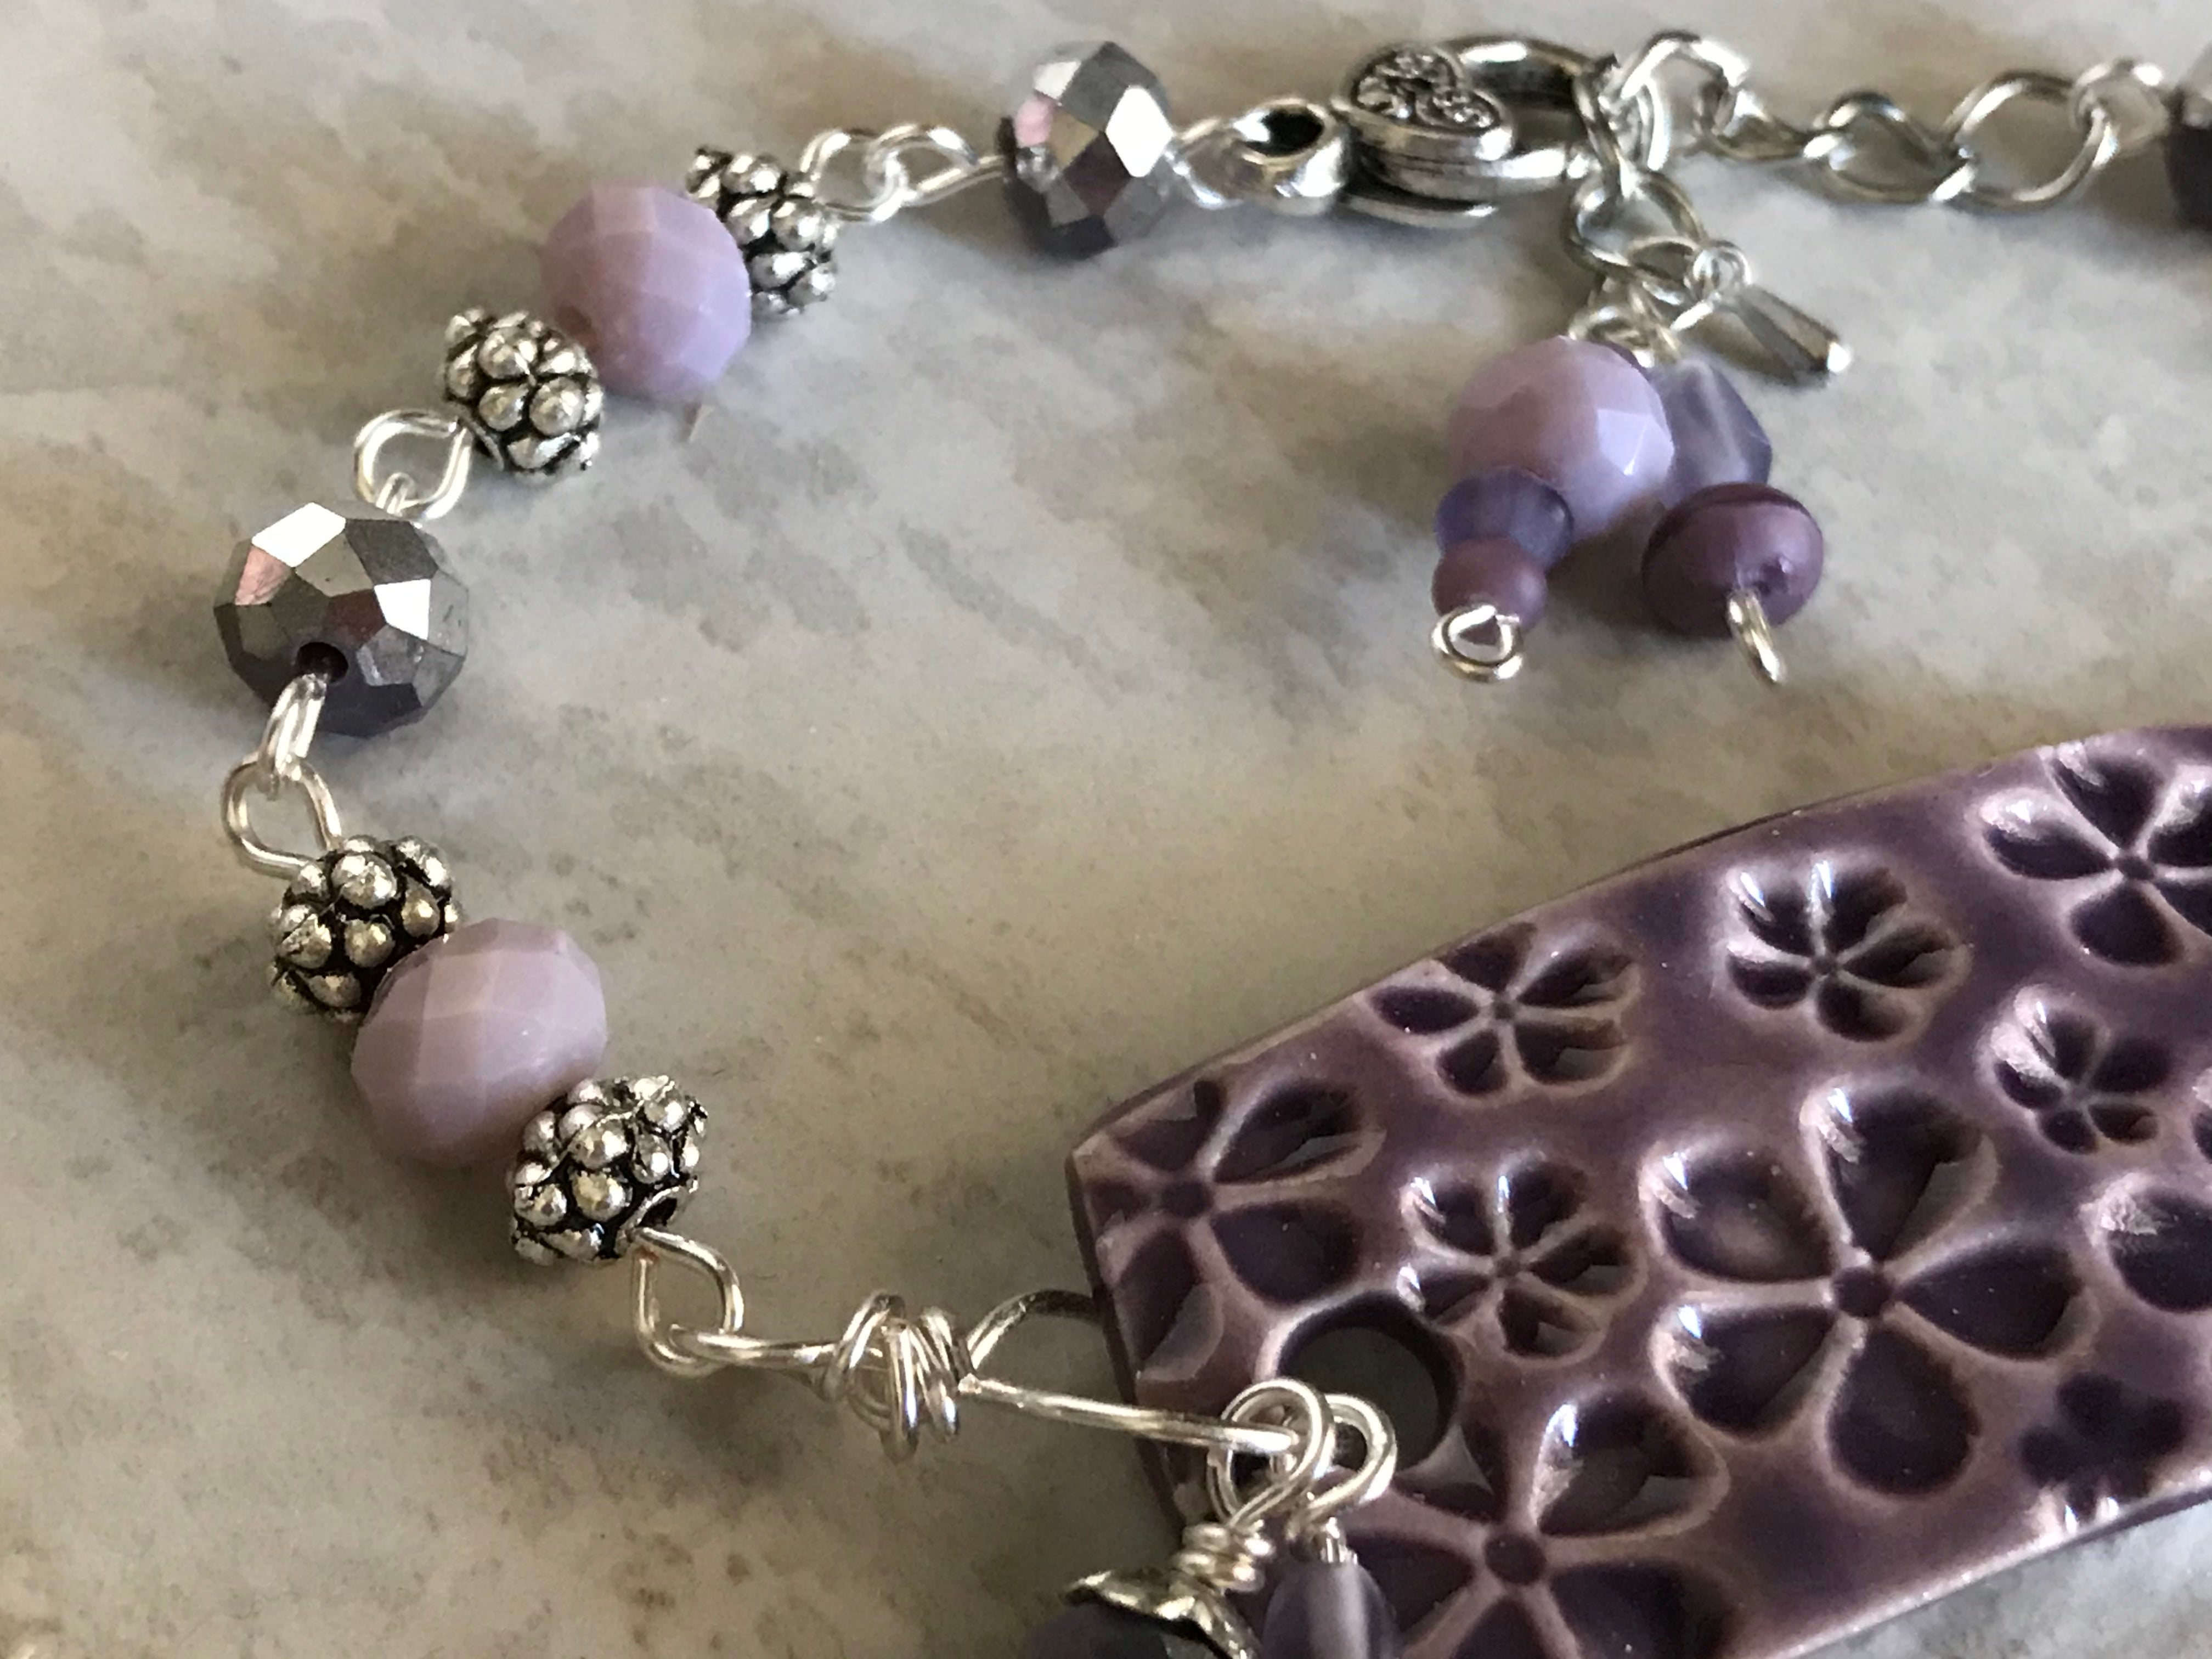 Bracelet and Earrings, Beaded Purple Bracelet and Earrings, Charm Bracelet Set, Jewelry Set